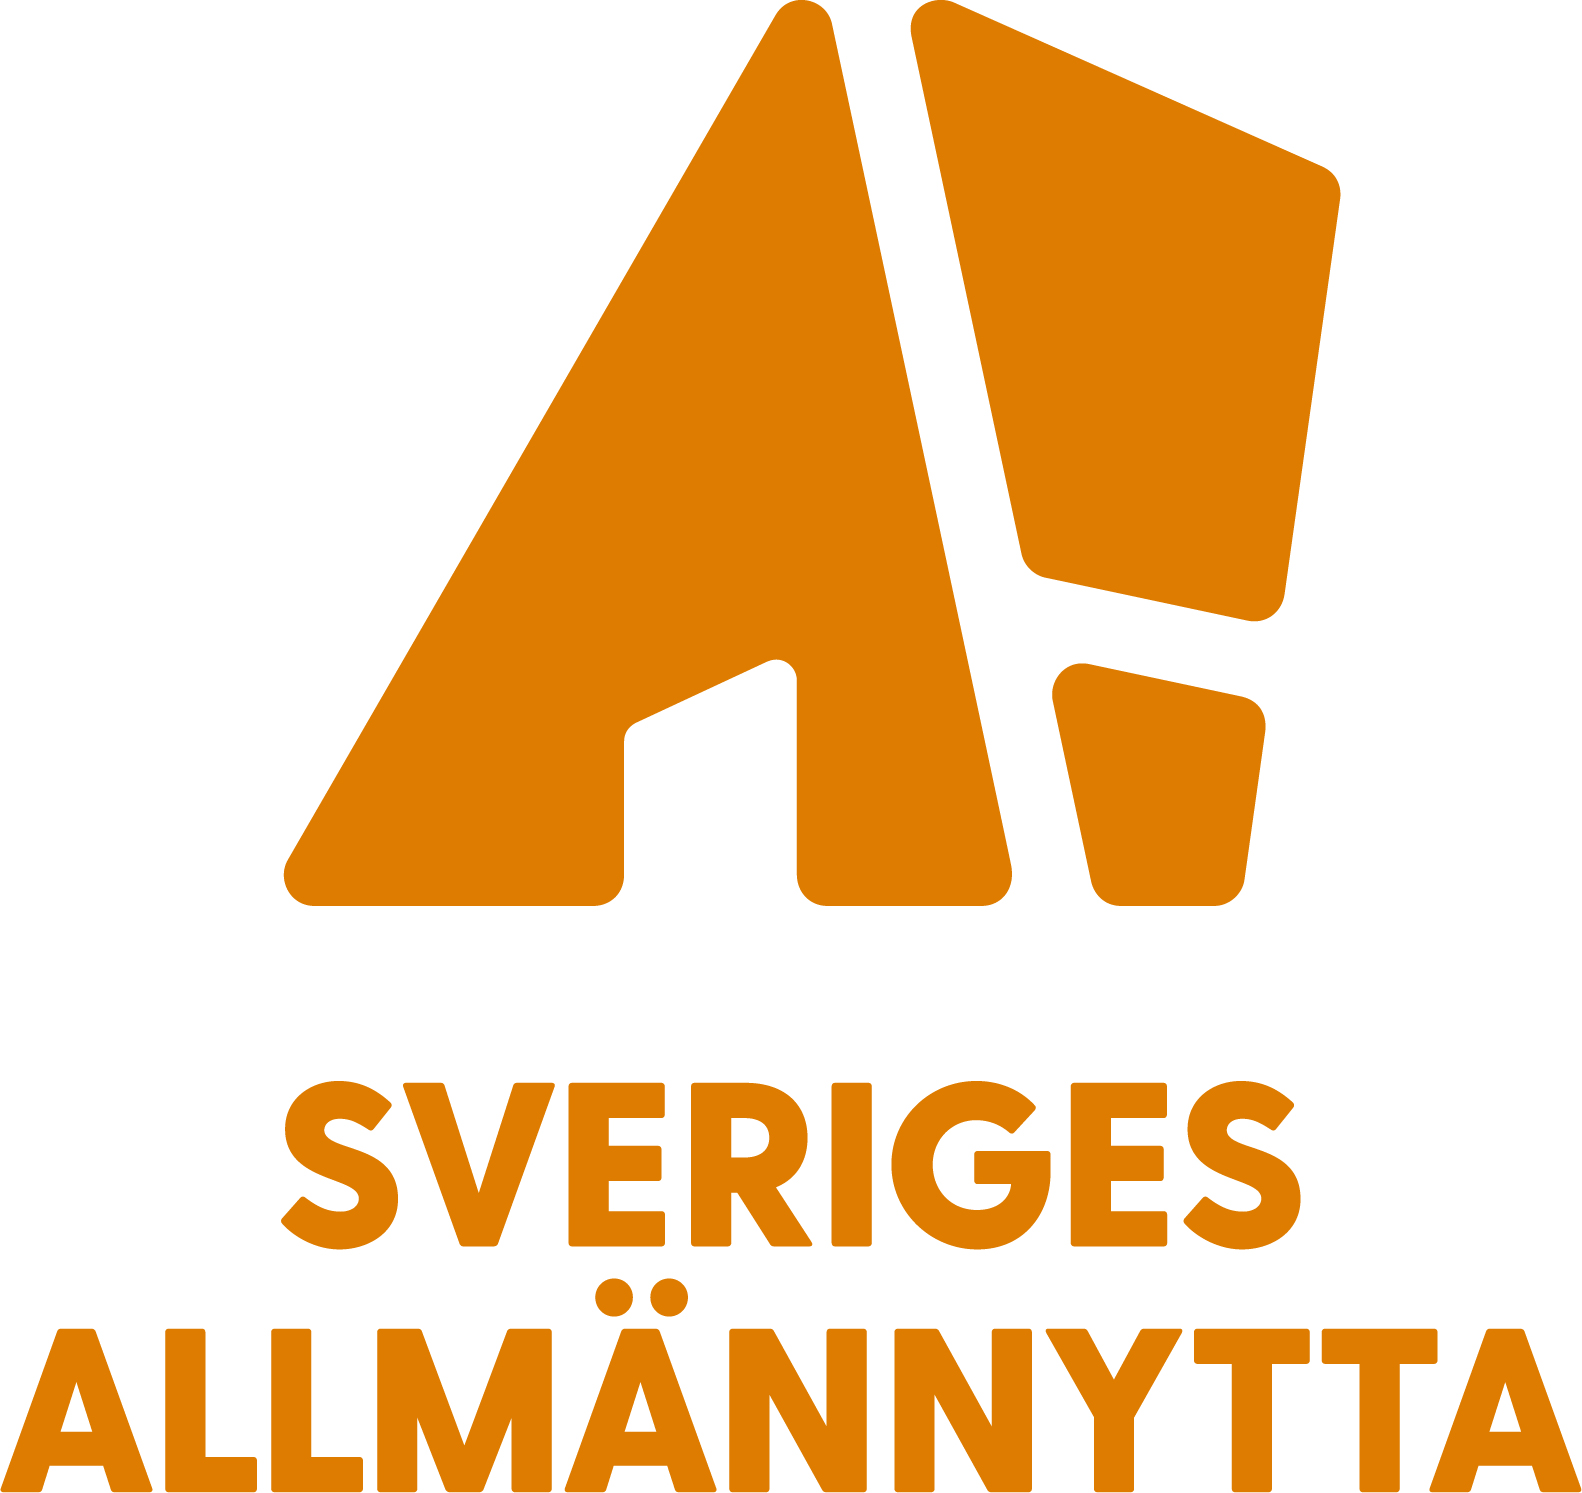 Sveriges Allmännytta logo